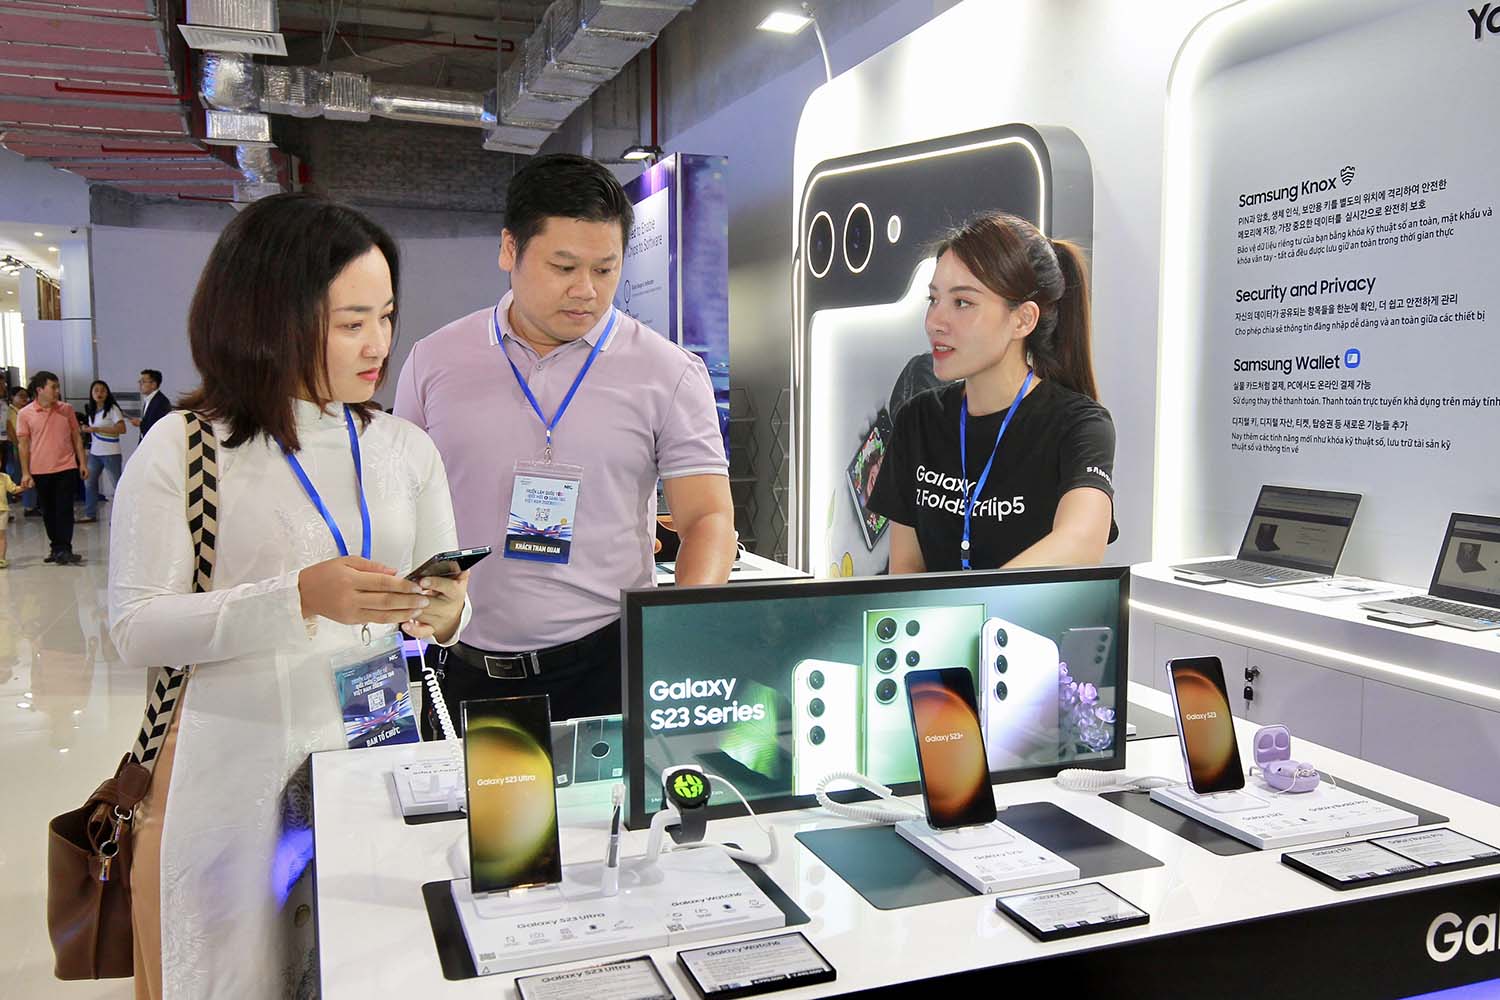 Cùng ngày, phòng lab Samsung Innovation Campus và Trung tâm ươm tạo thiết kế chip chính thức được khánh thành. Phòng lab Samsung Innovation Campus thể hiện cam kết của tập đoàn Hàn Quốc trong việc hỗ trợ tích cực NIC trở thành cái nôi đào tạo nhân tài công nghệ, dẫn dắt công cuộc đổi mới sáng tạo quốc gia tương lai. Trung tâm ươm tạo thiết kế chip là bước đi hiện thực hóa thỏa thuận giữa Synopsys và NIC ký kết vào tháng 9 vừa qua nhằm phát triển nguồn nhân lực tài năng thiết kế chip tại Việt Nam. Thủ tướng Chính phủ và các đại biểu đã tới tham quan và khai trương phòng lab và trung tâm ươm tạo.